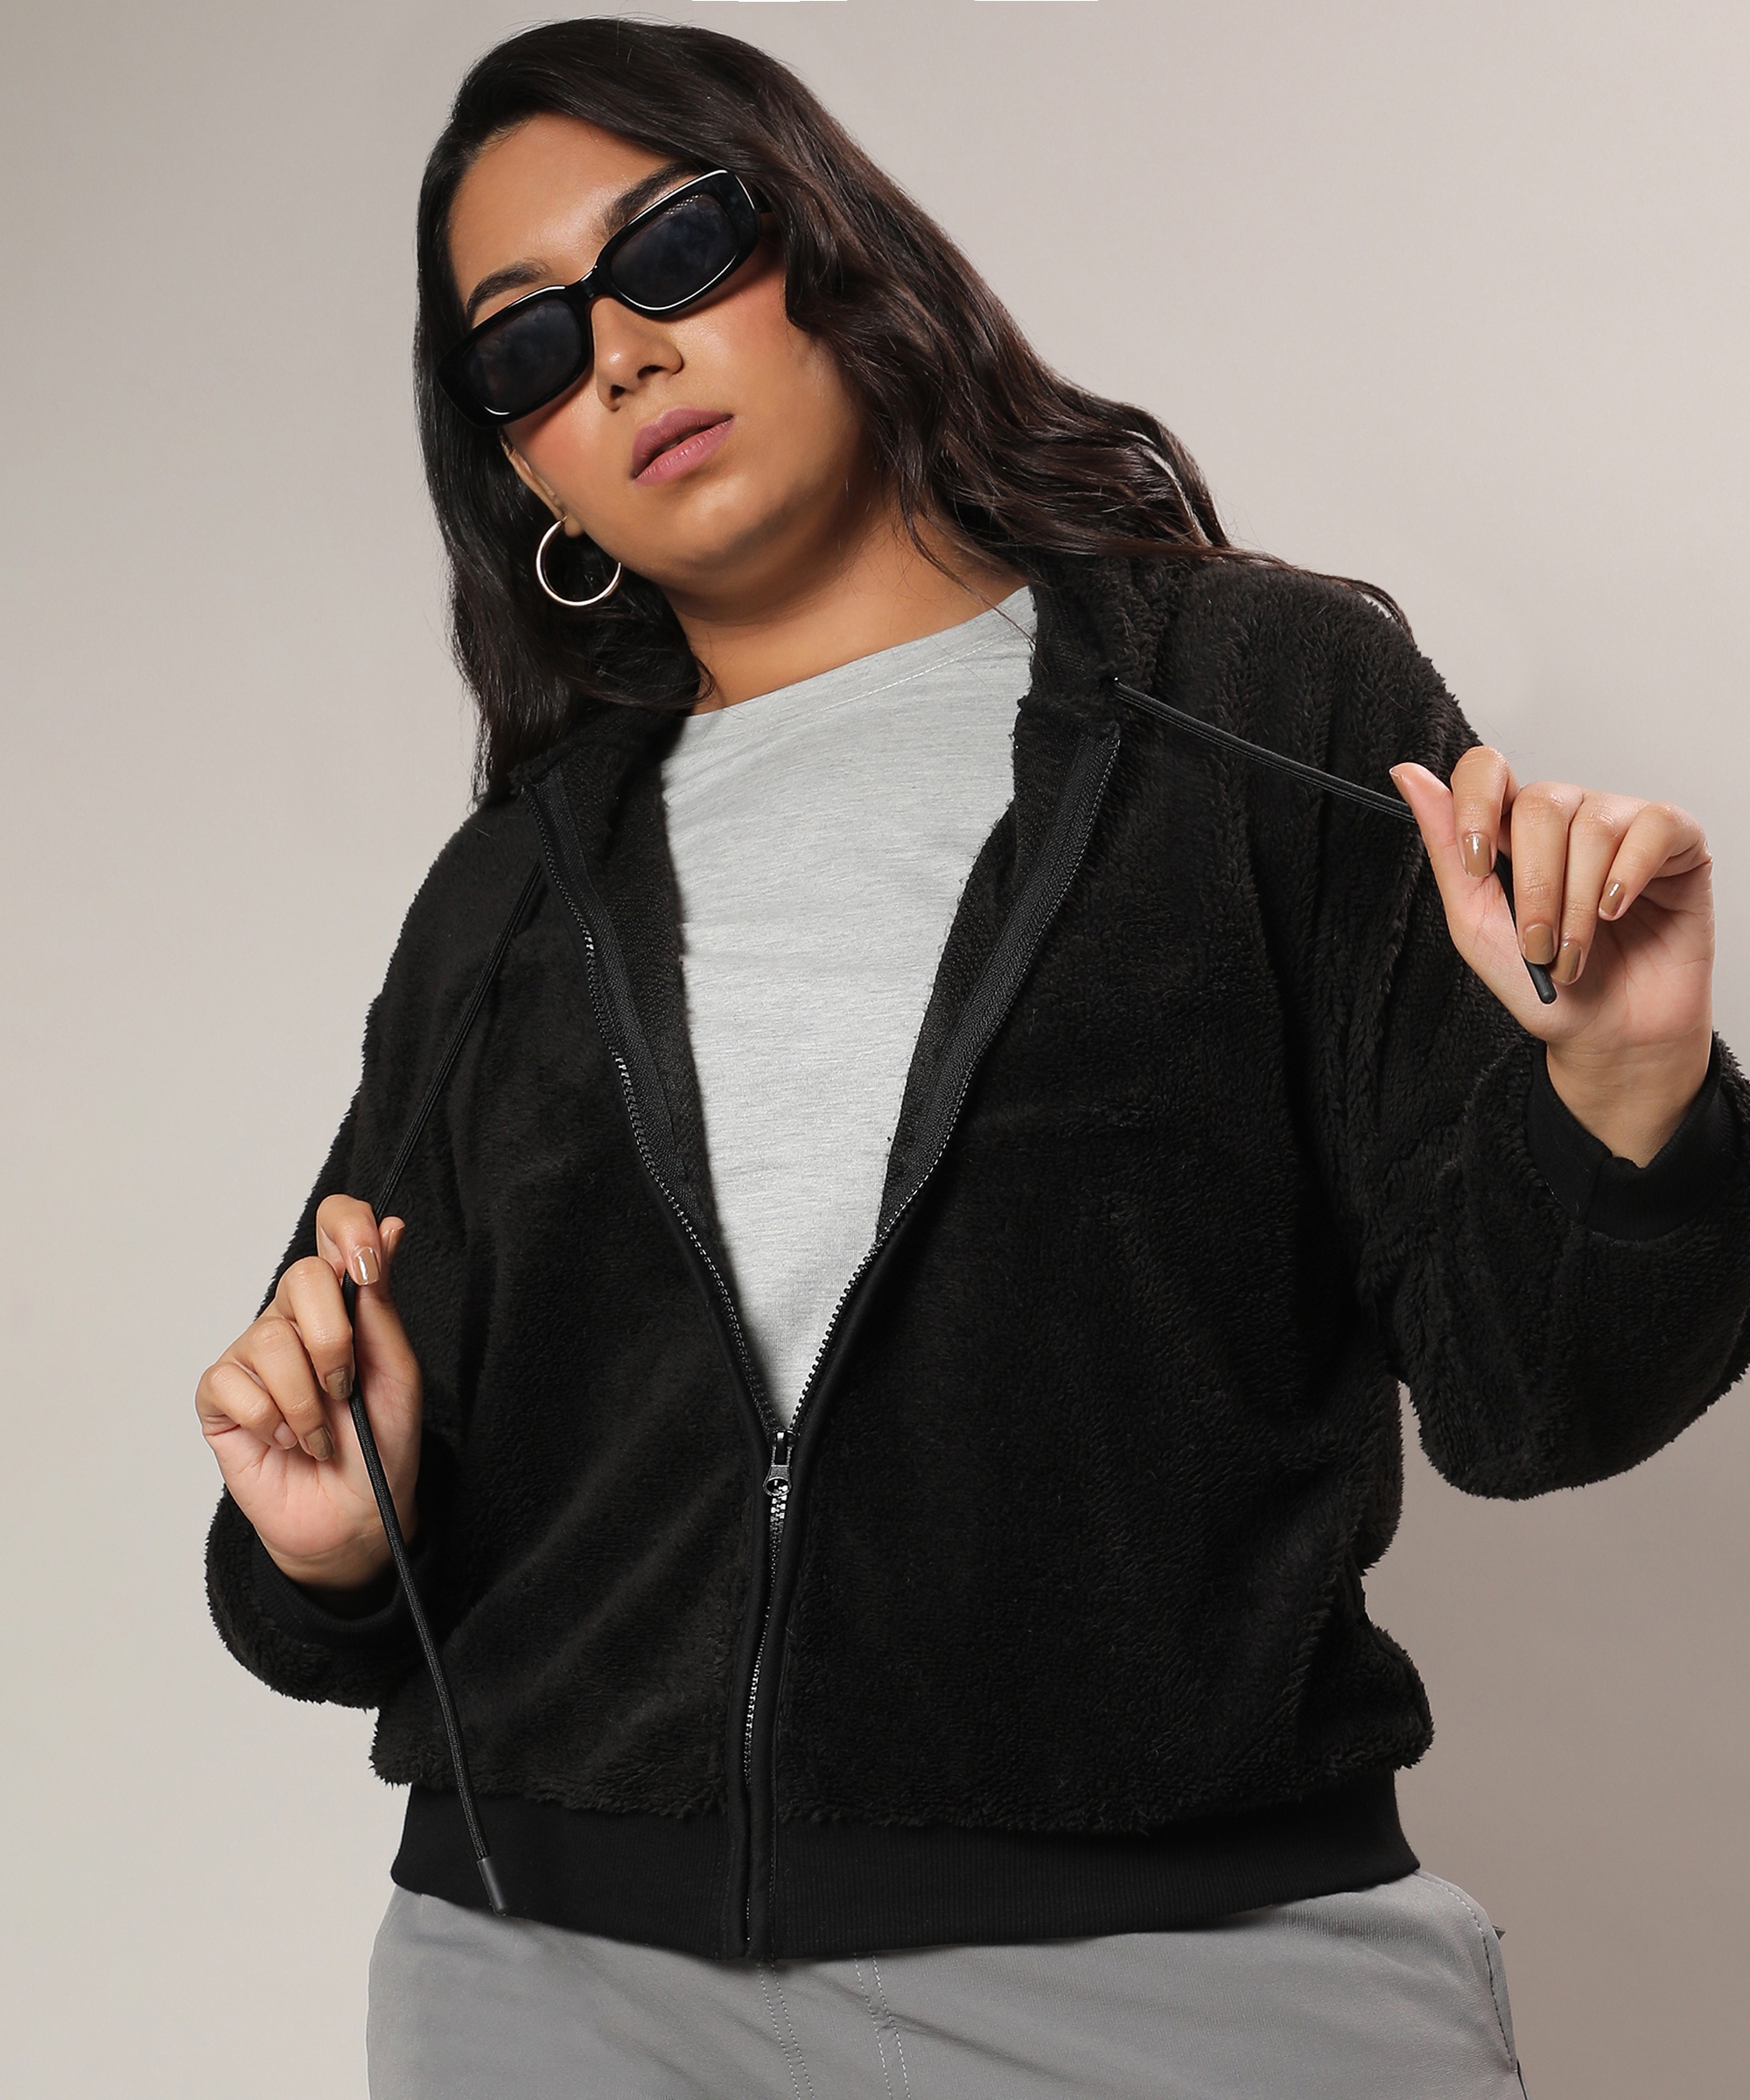 Instafab Plus | Women's Carbon Black Fleece Hoodie With Zip-Closure